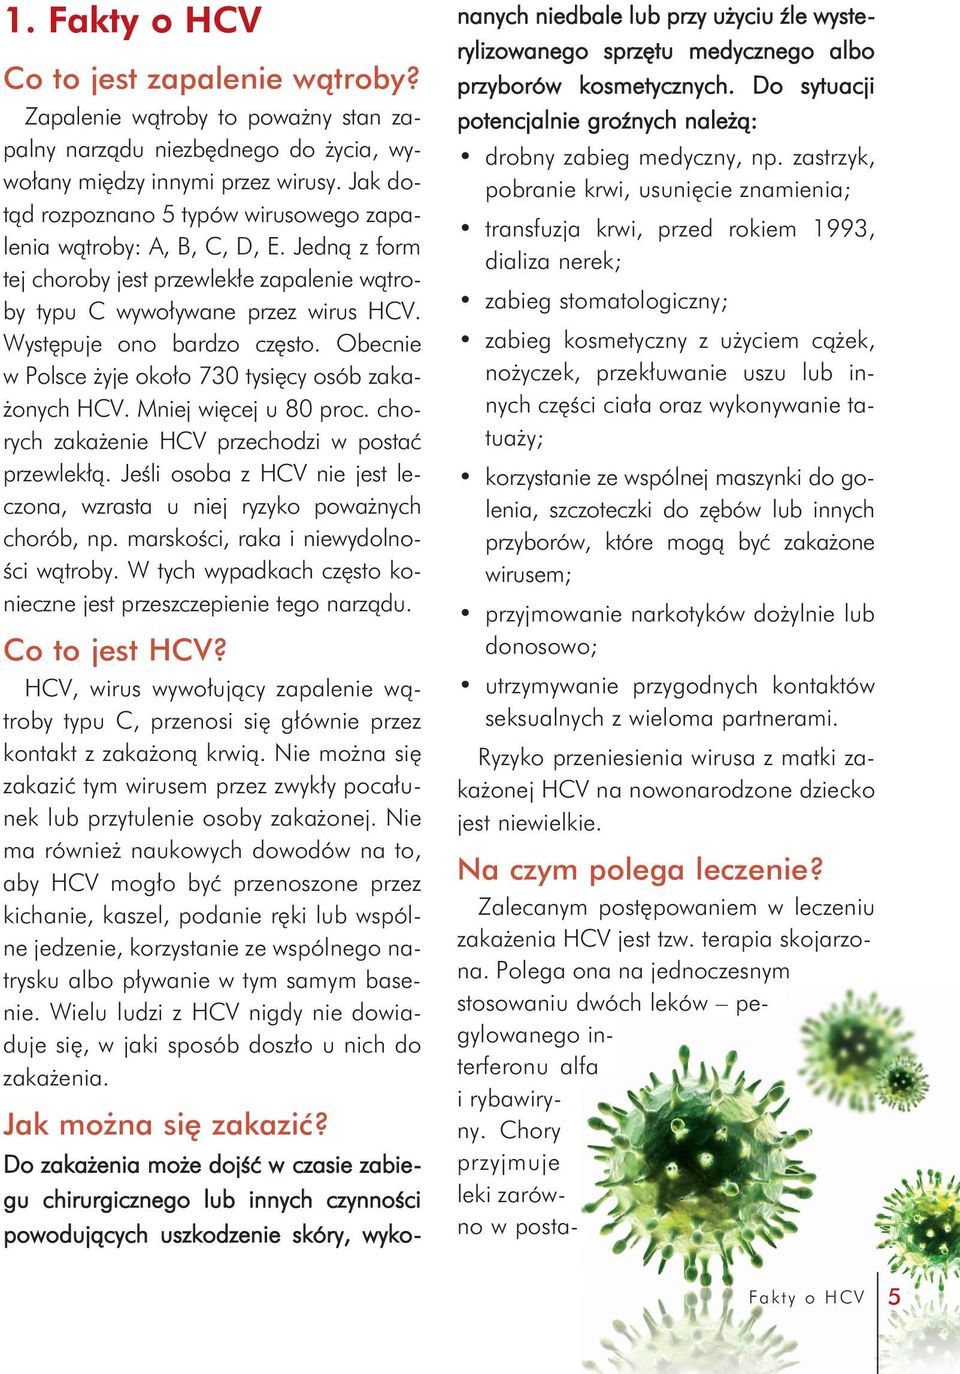 Obecnie w Polsce żyje około 730 tysięcy osób zakażonych HCV. Mniej więcej u 80 proc. chorych zakażenie HCV przechodzi w postać przewlekłą.